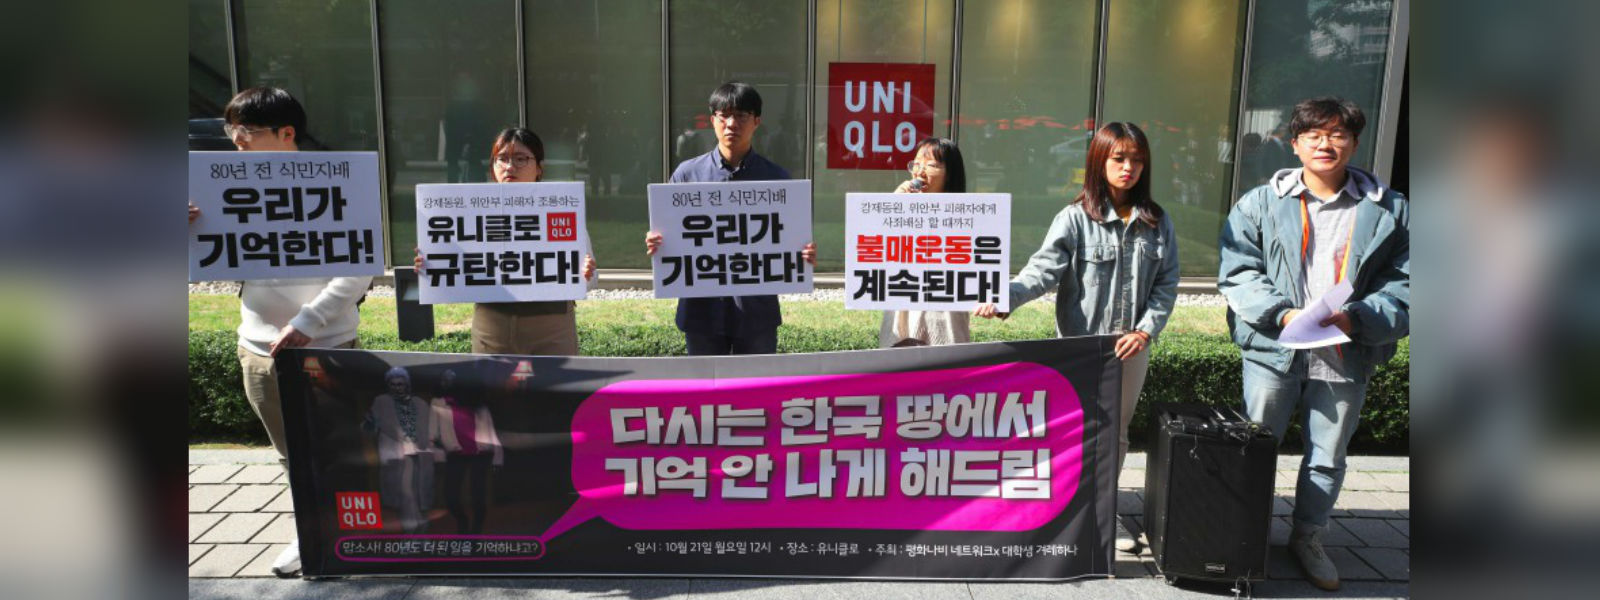 Uniqlo ad sparks protest